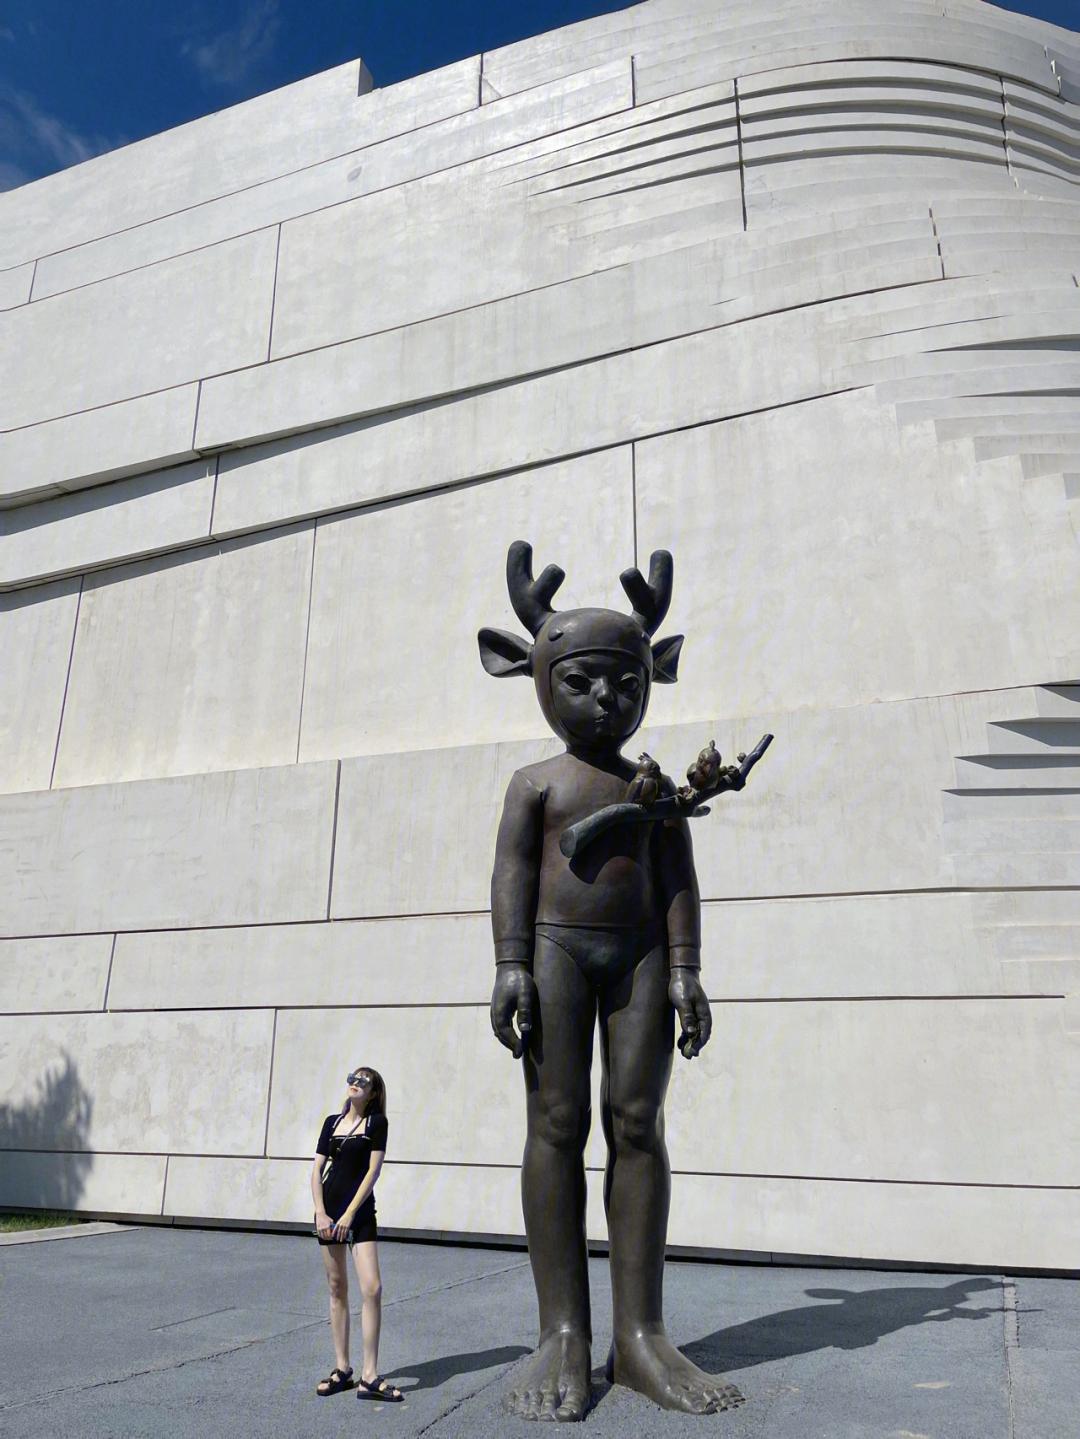 银川当代美术馆雕塑图片